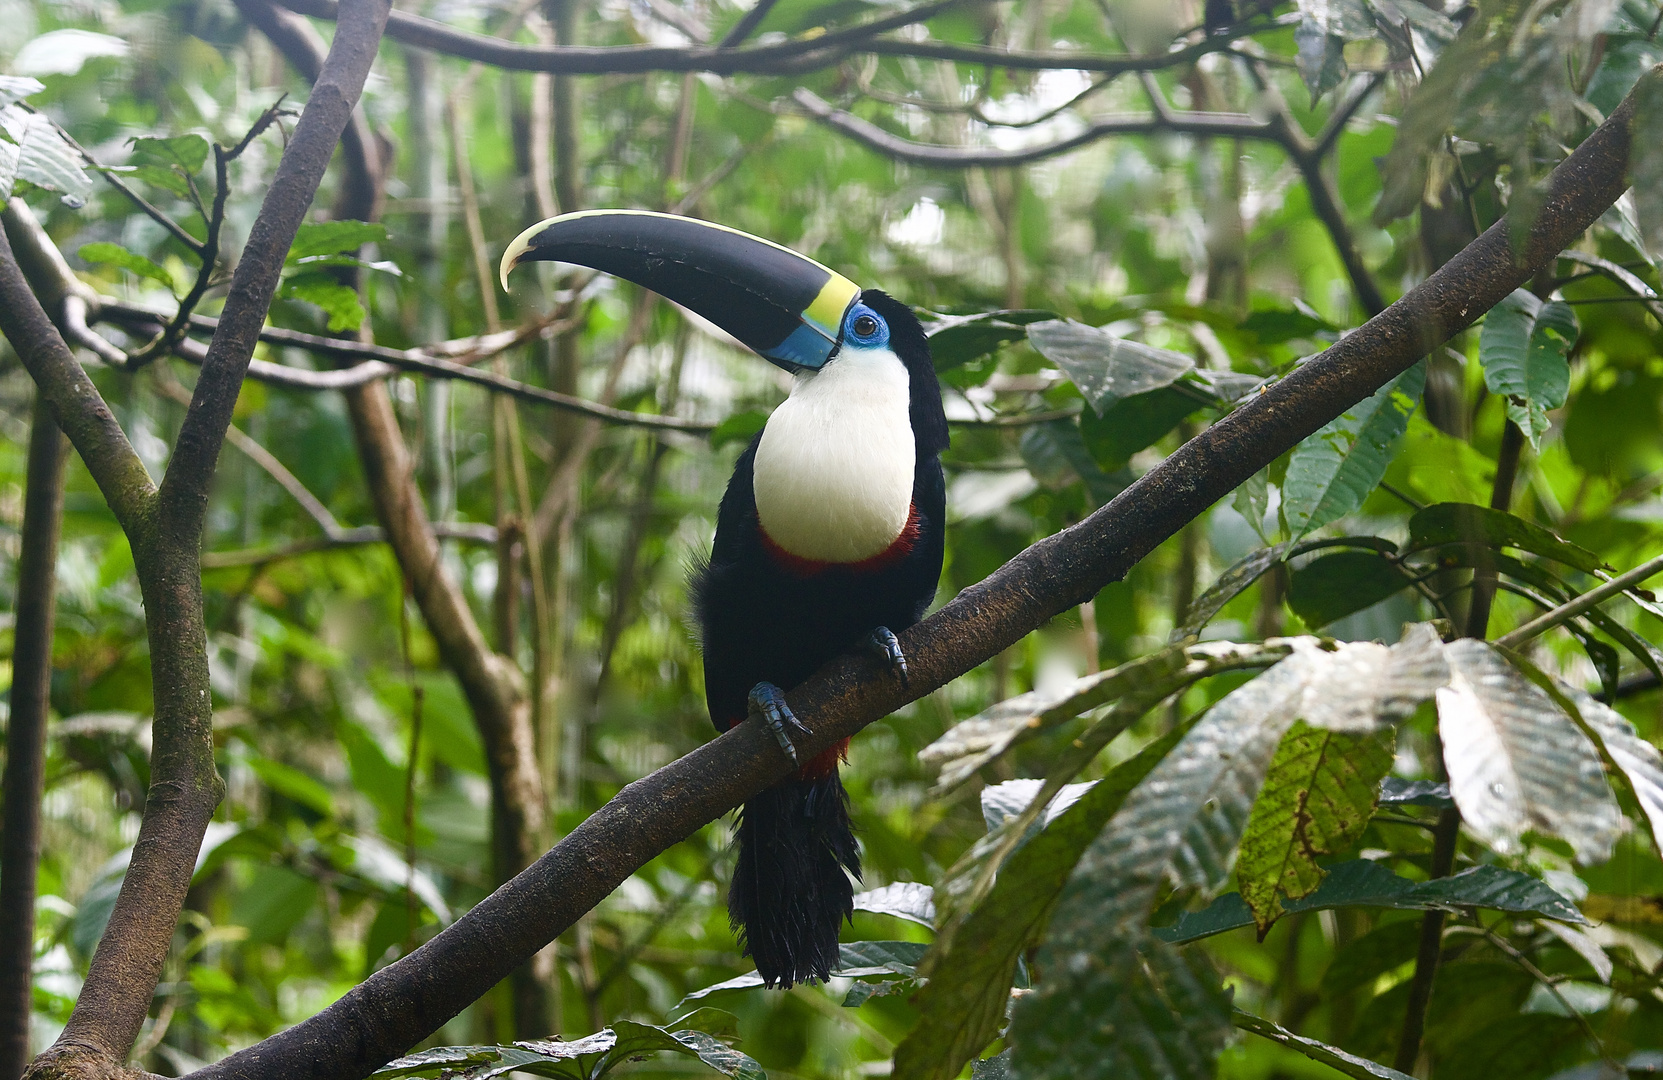 Tukan aus dem Tropischen Regenwald von Ecuador